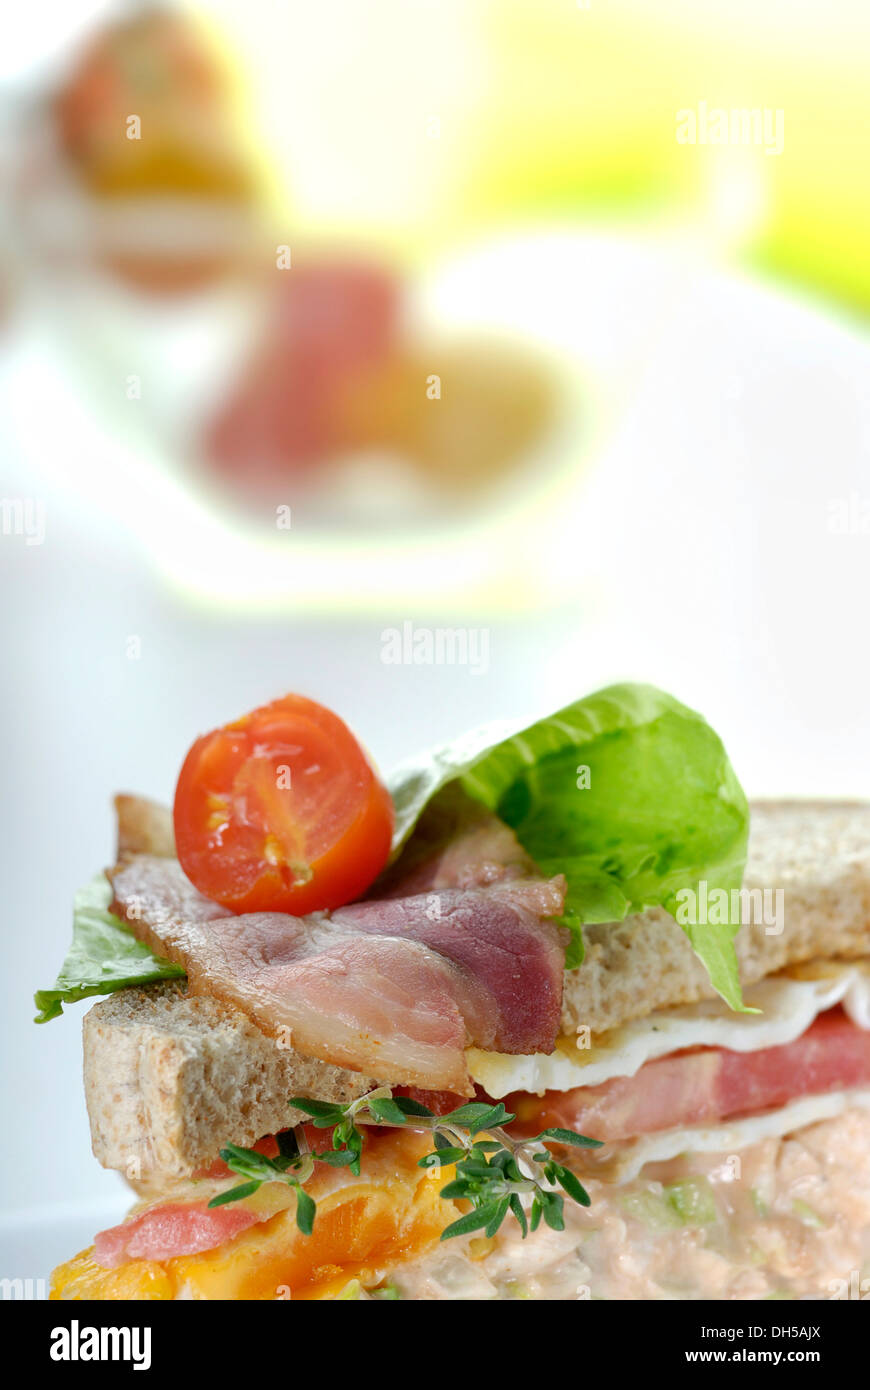 Club sandwich Stock Photo